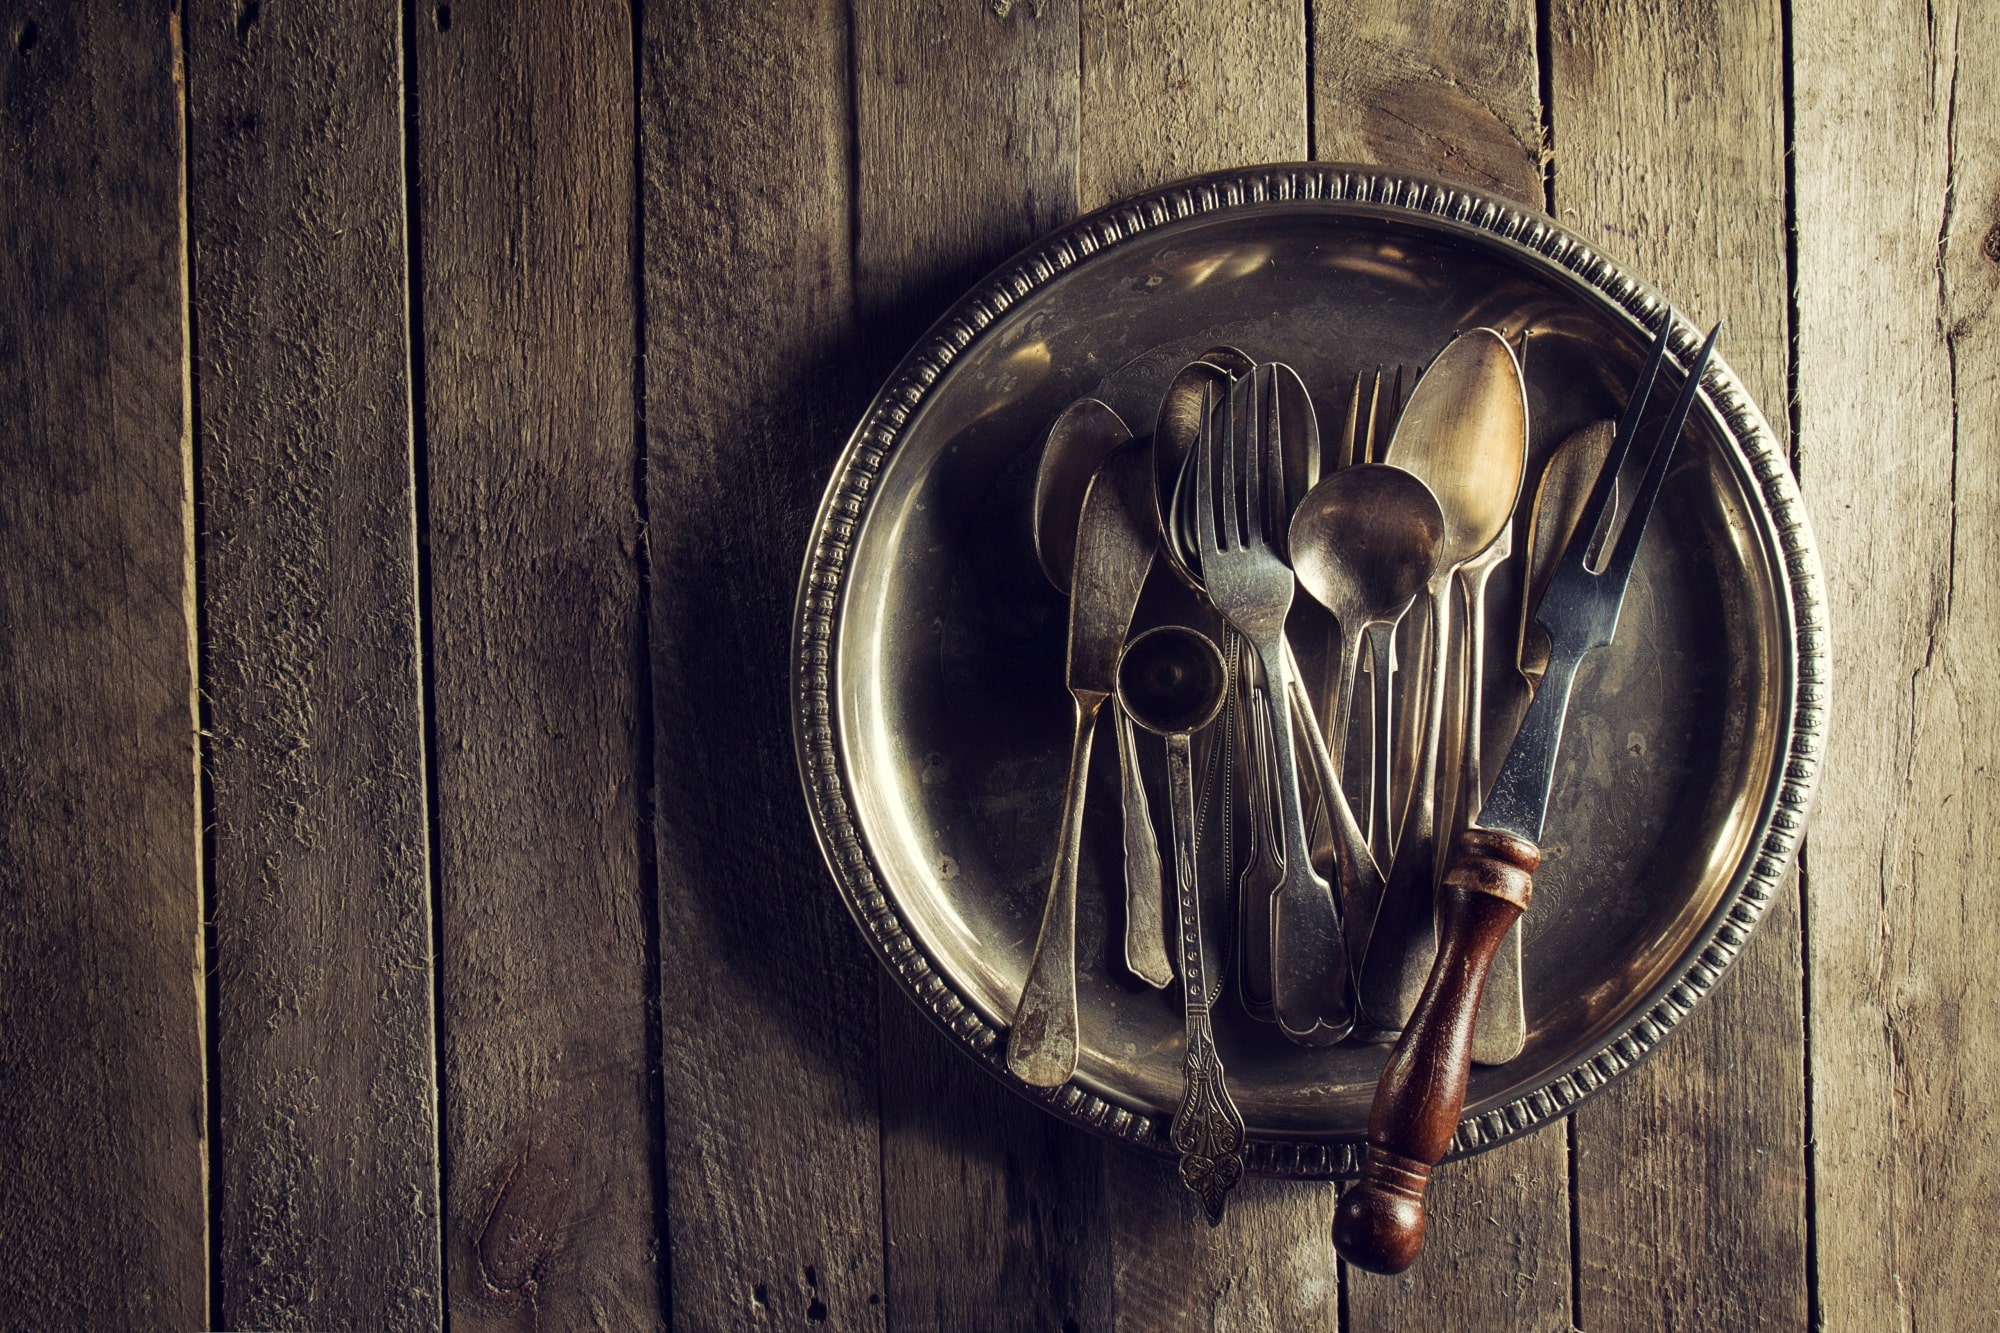 Au-napoléon-dor-expertise-achat-objets-precieux-Langon-Gradignan-vintage-old-rustic-kitchen-utensils-fourchettes-cuilleres-couteaux-vieille-table-bois-nourriture-vintage-rustic-concept-vue-dessus